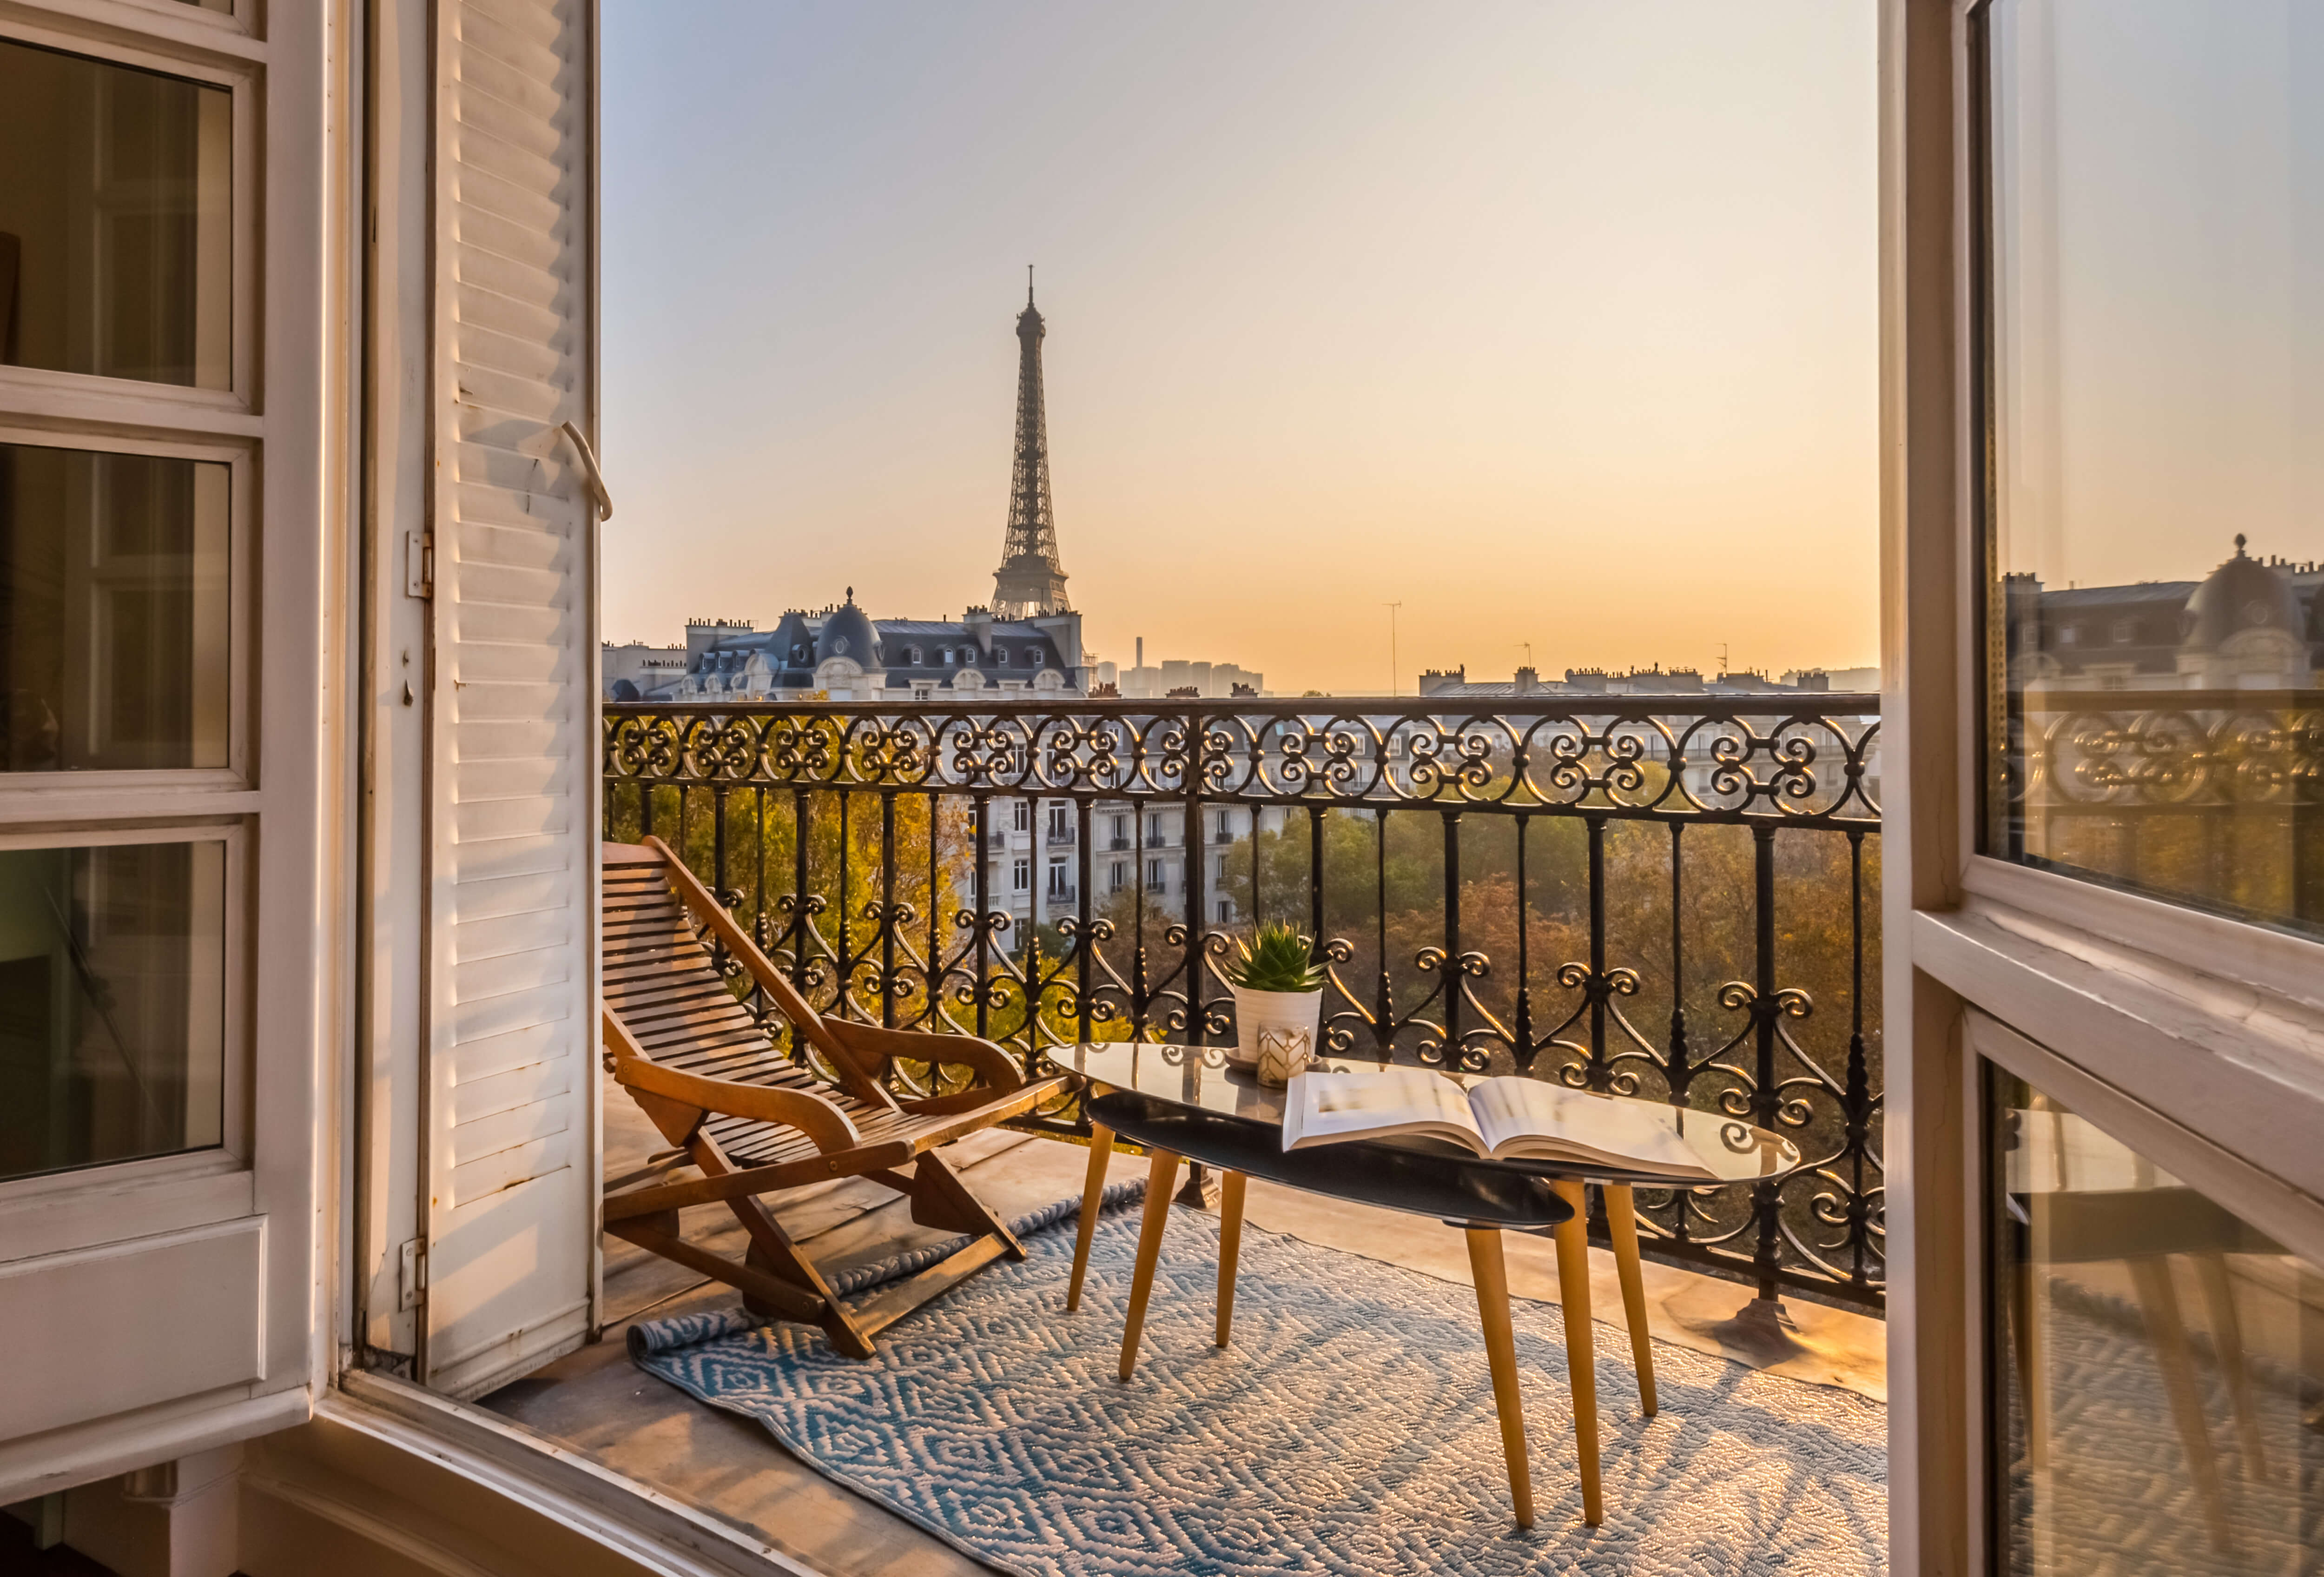 Magnifique terrasse dans paris pour une demande en mariage